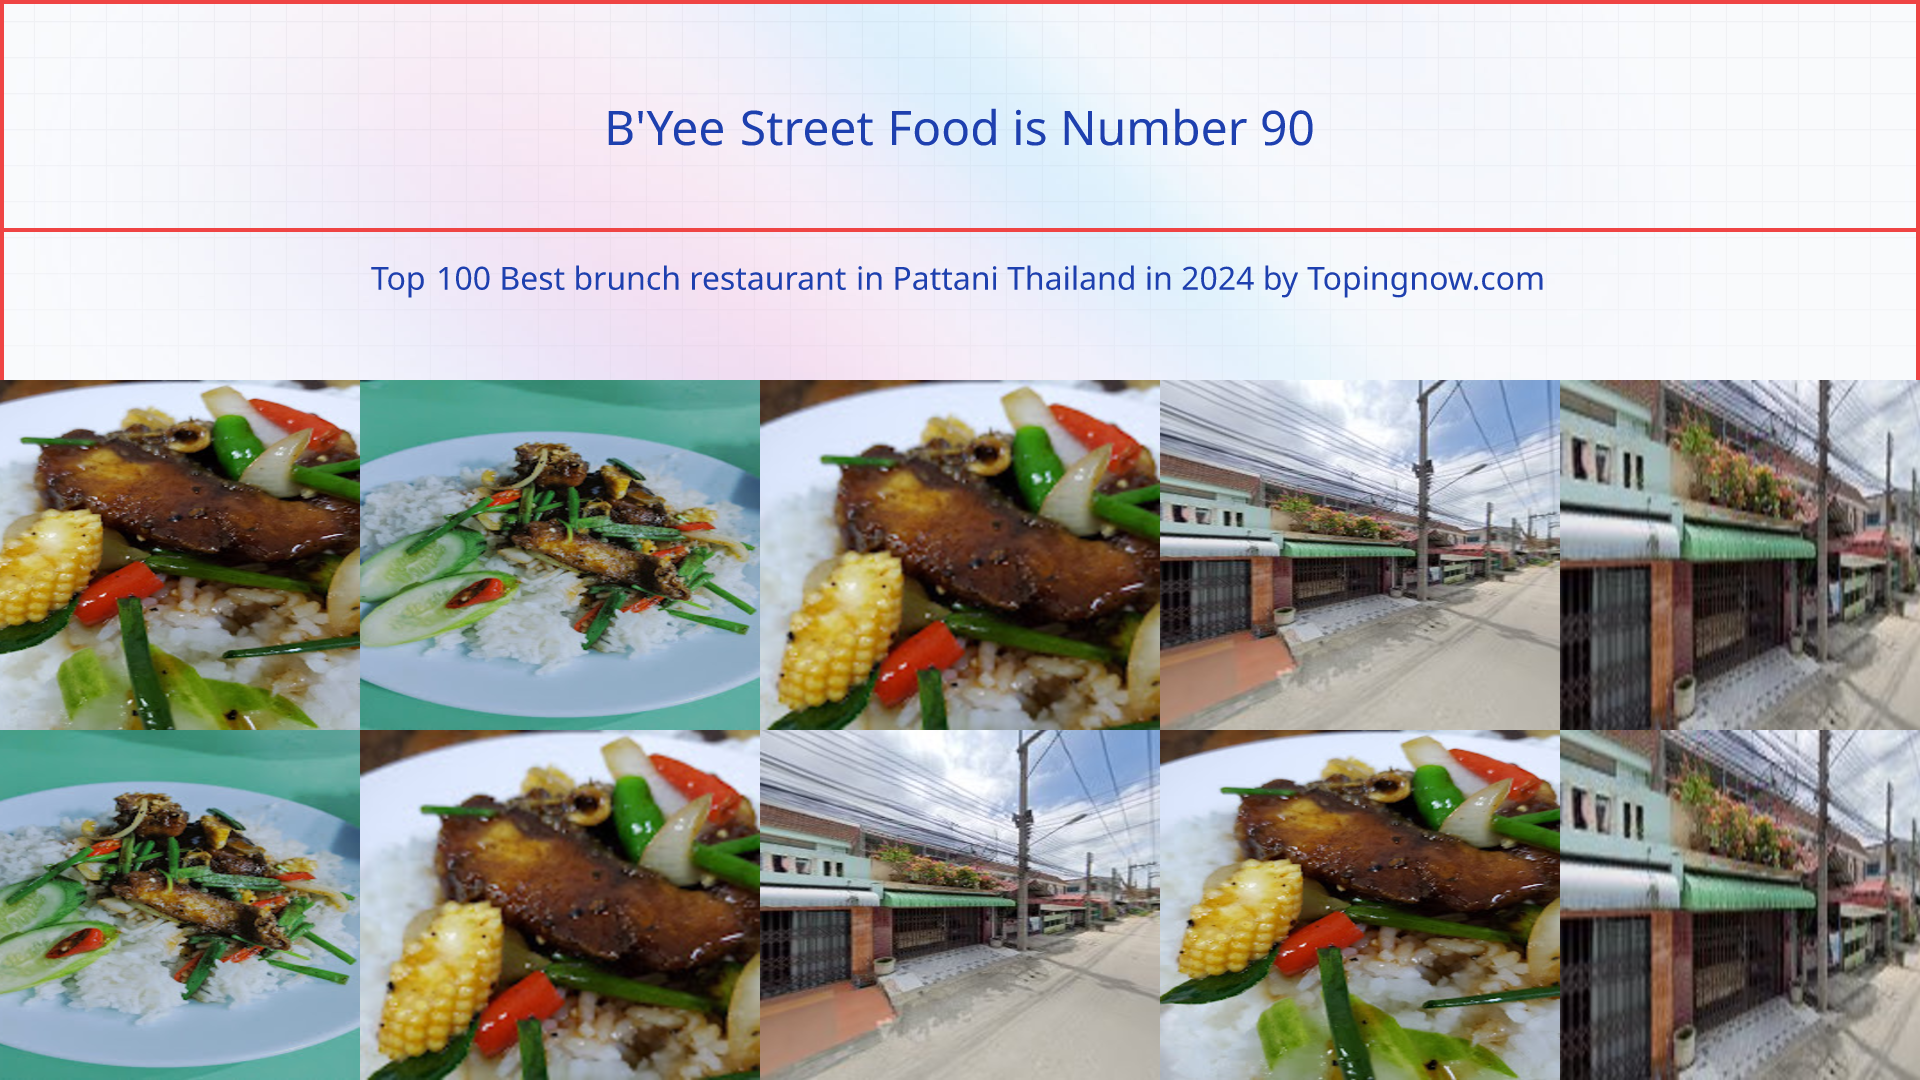 B'Yee Street Food: Top 100 Best brunch restaurant in Pattani Thailand in 2024